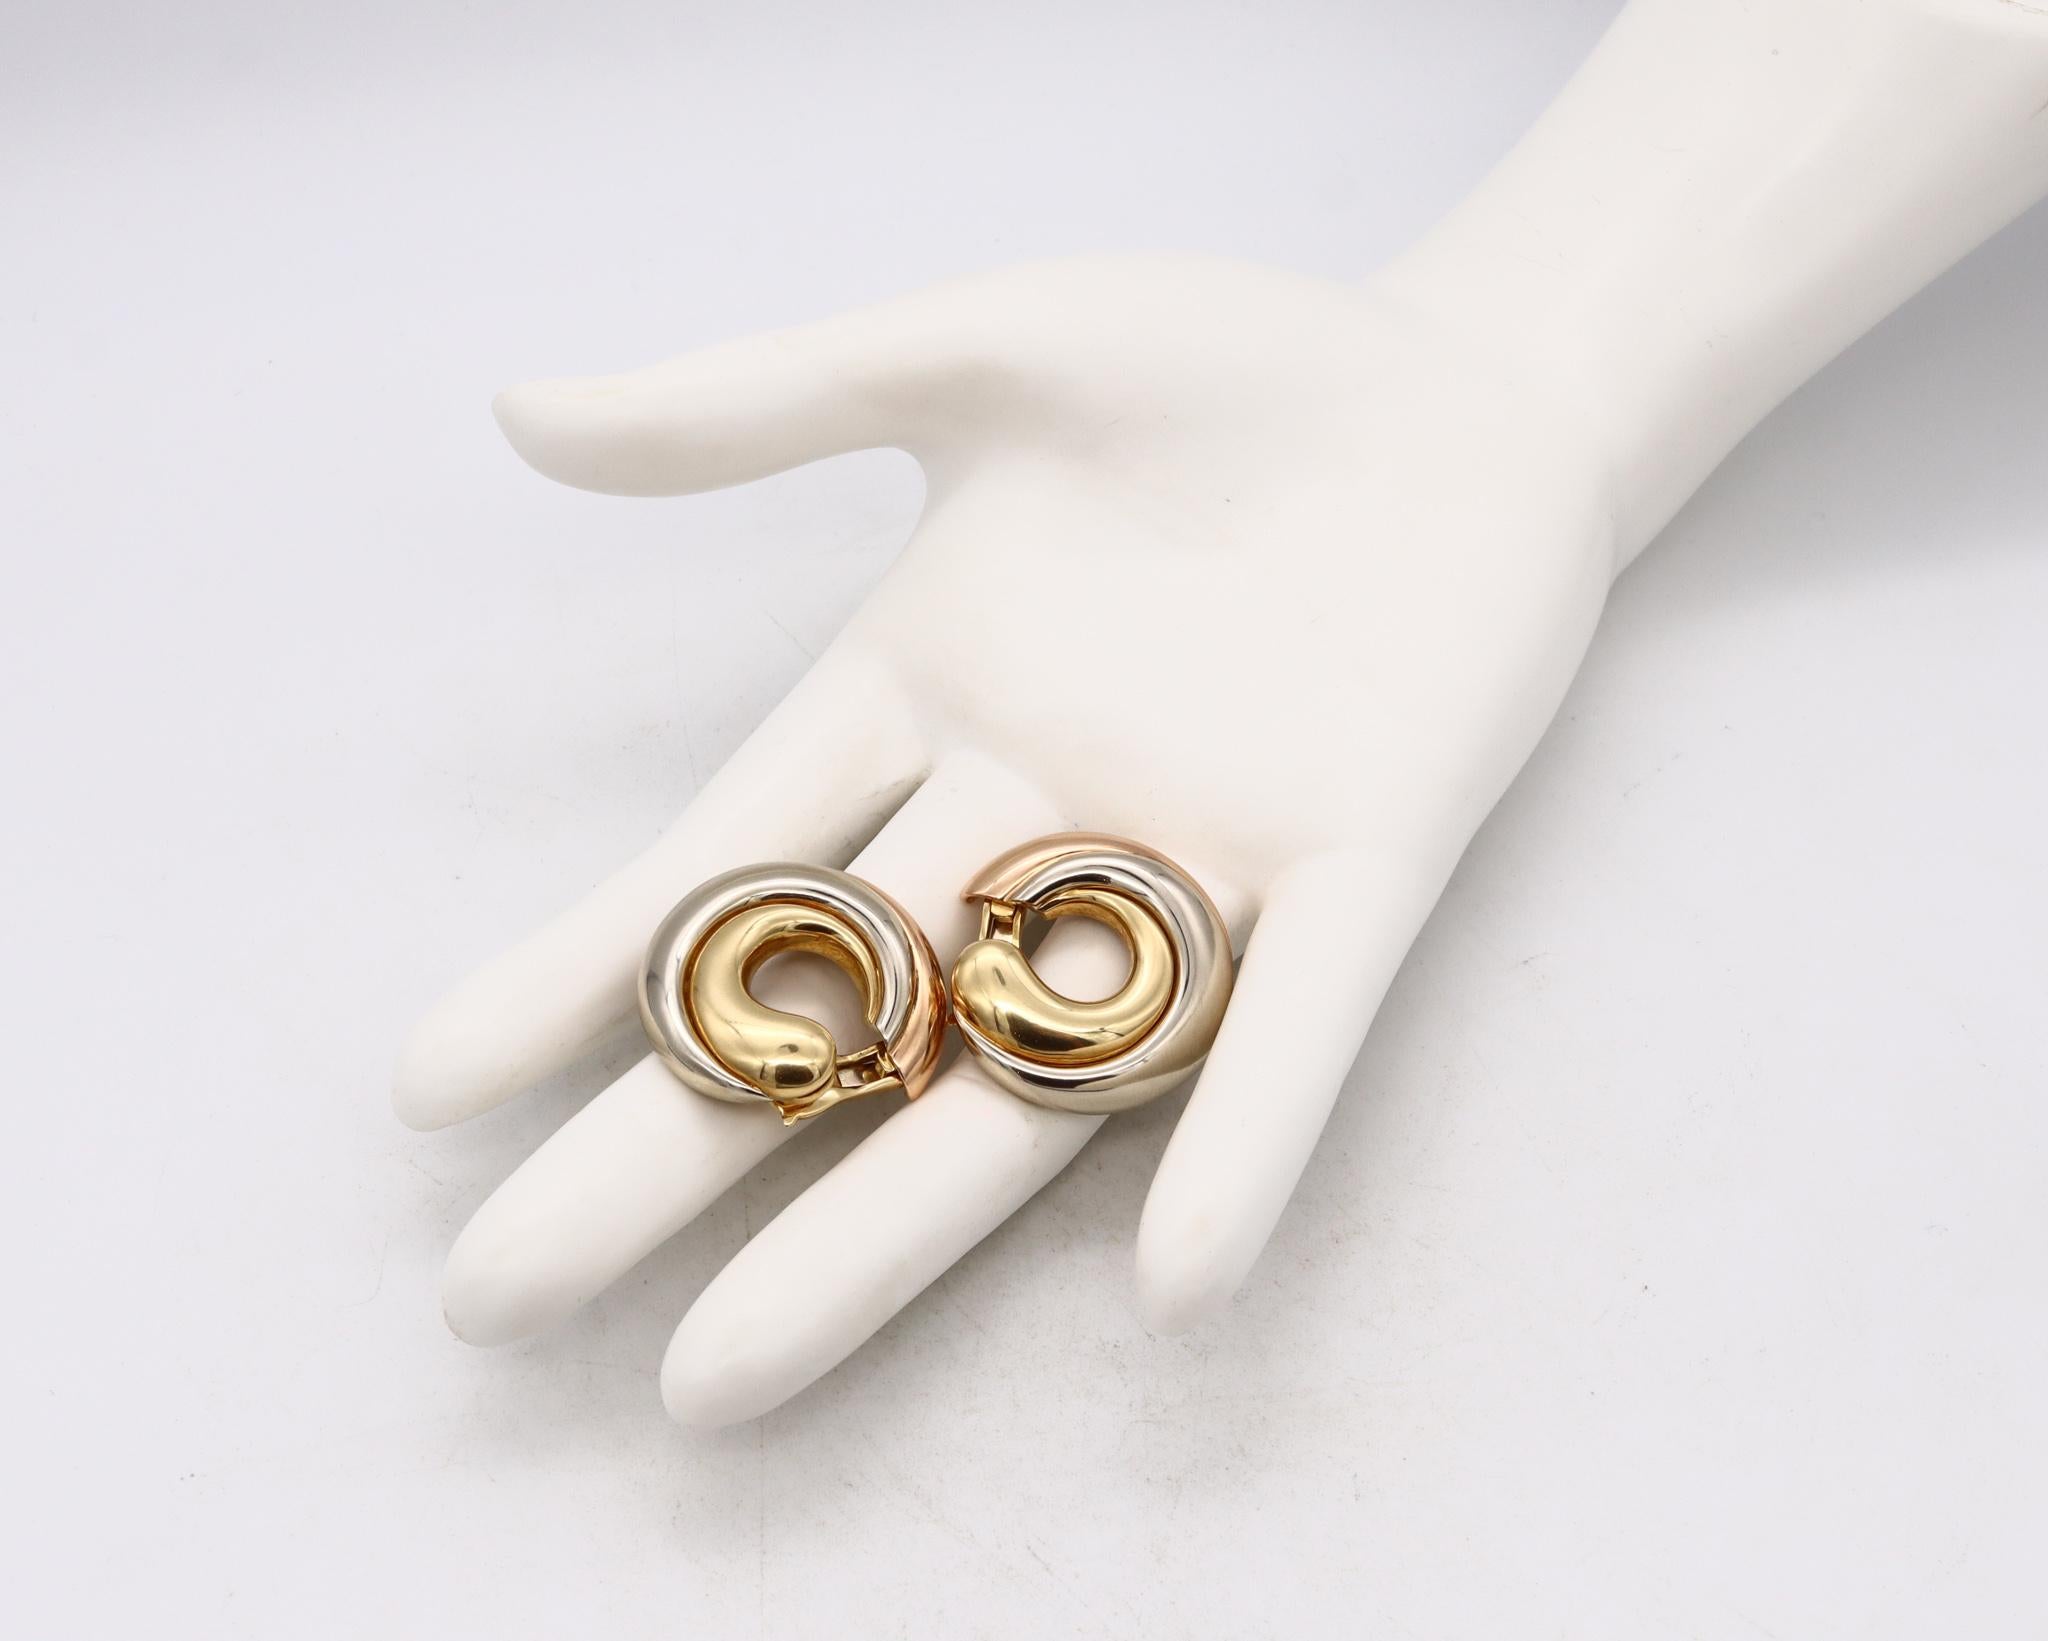 Trinity-Clips-Ohrringe, entworfen von Cartier.

Übergroße Trinity-Clips-Ohrringe, die in Paris, Frankreich, vom Haus Cartier entworfen wurden. Sie wurden sorgfältig aus massivem 18-karätigem Tricolor-Gold mit hochglanzpolierter Oberfläche gefertigt.